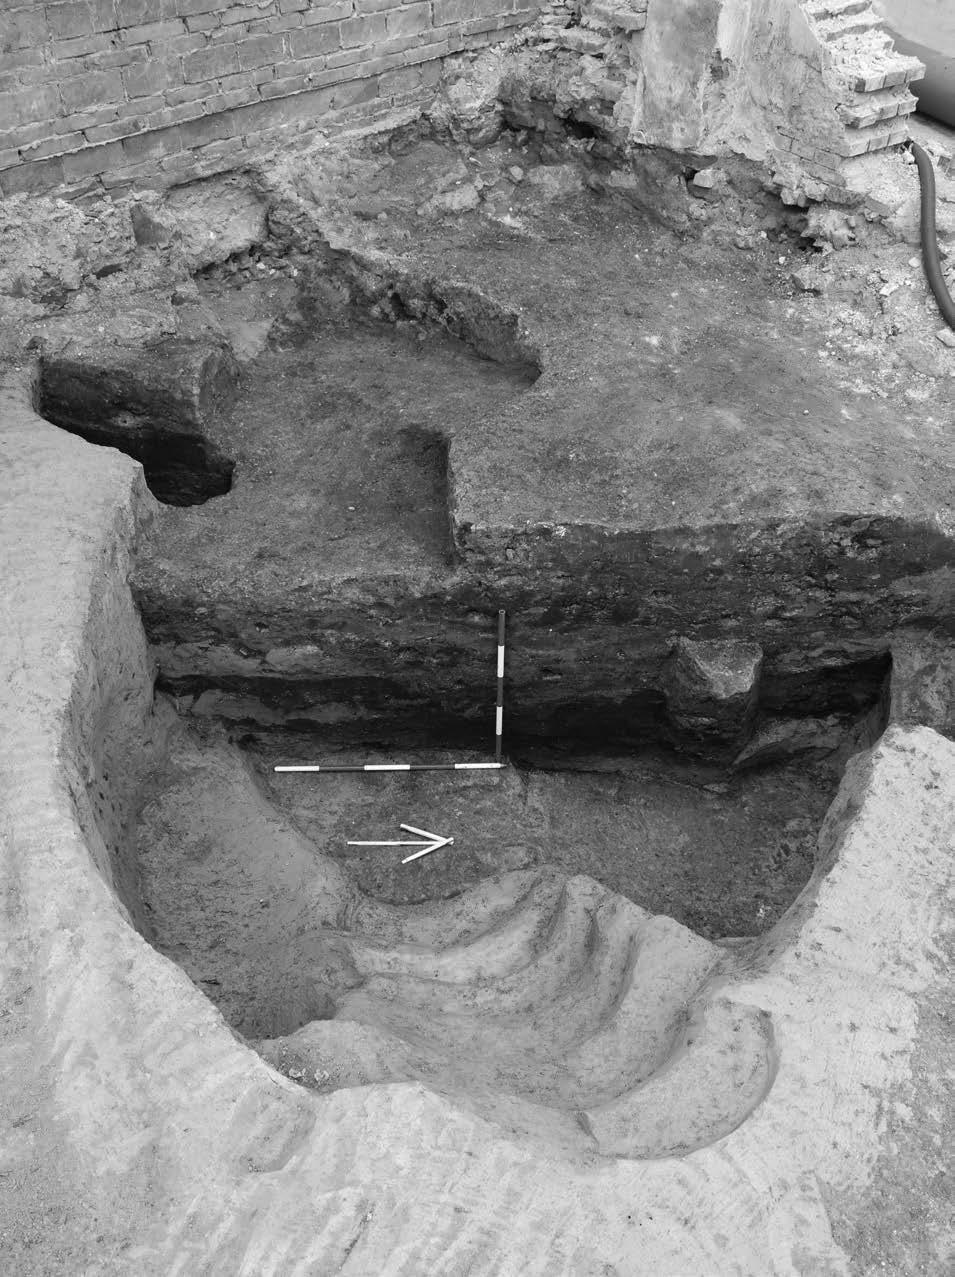 Celý prostor záchranného archeologického výzkumu byl po odstranění novověkých konstrukcí a planýrek, začištěn na podloží (spraš a půdní horizont).